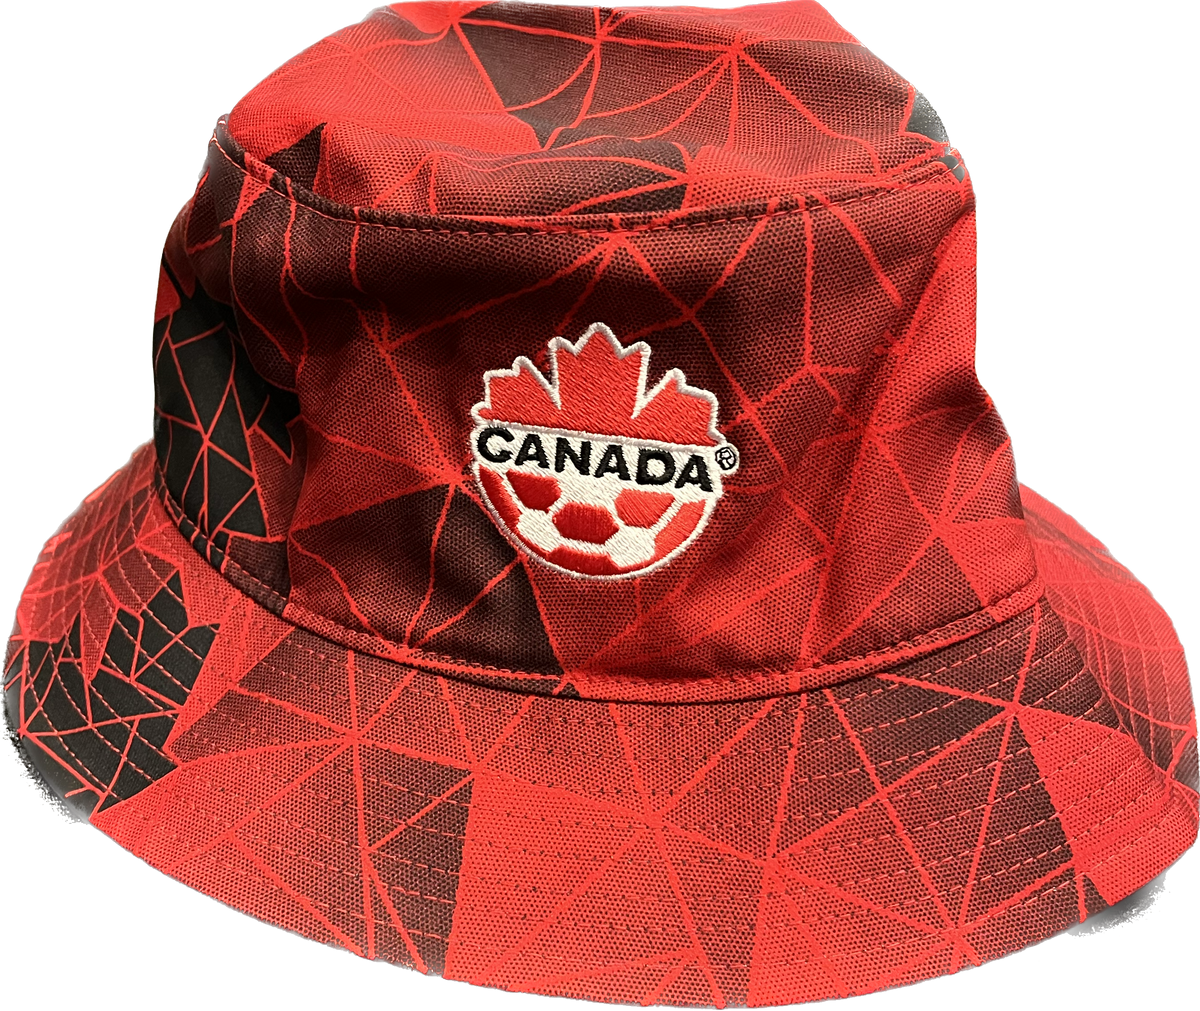 Canada Bucket hat